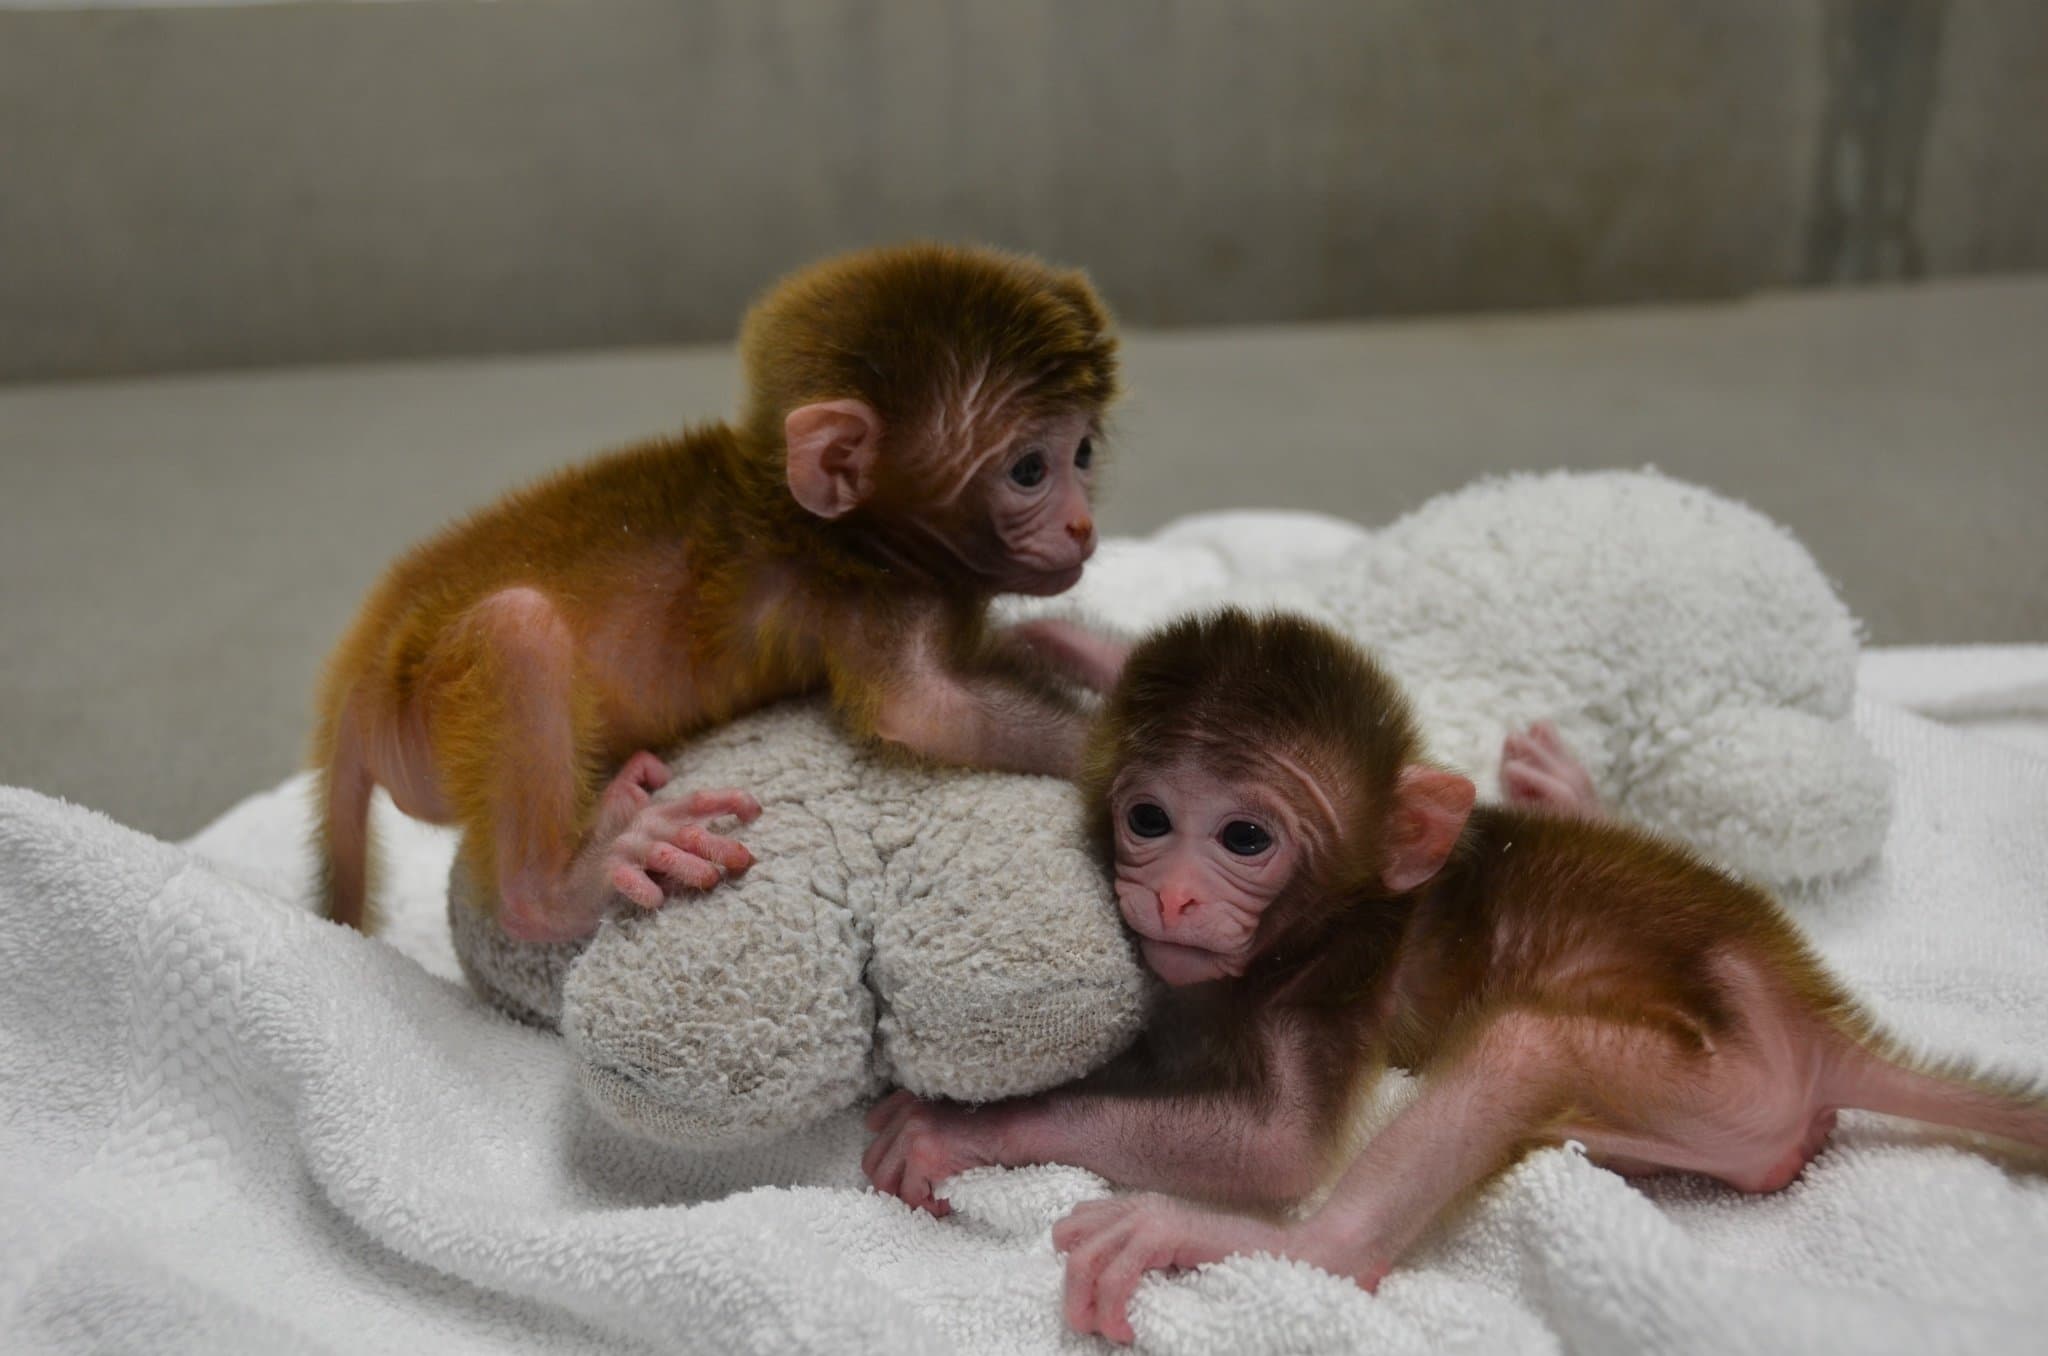 Oregon Natural Primate Research Center